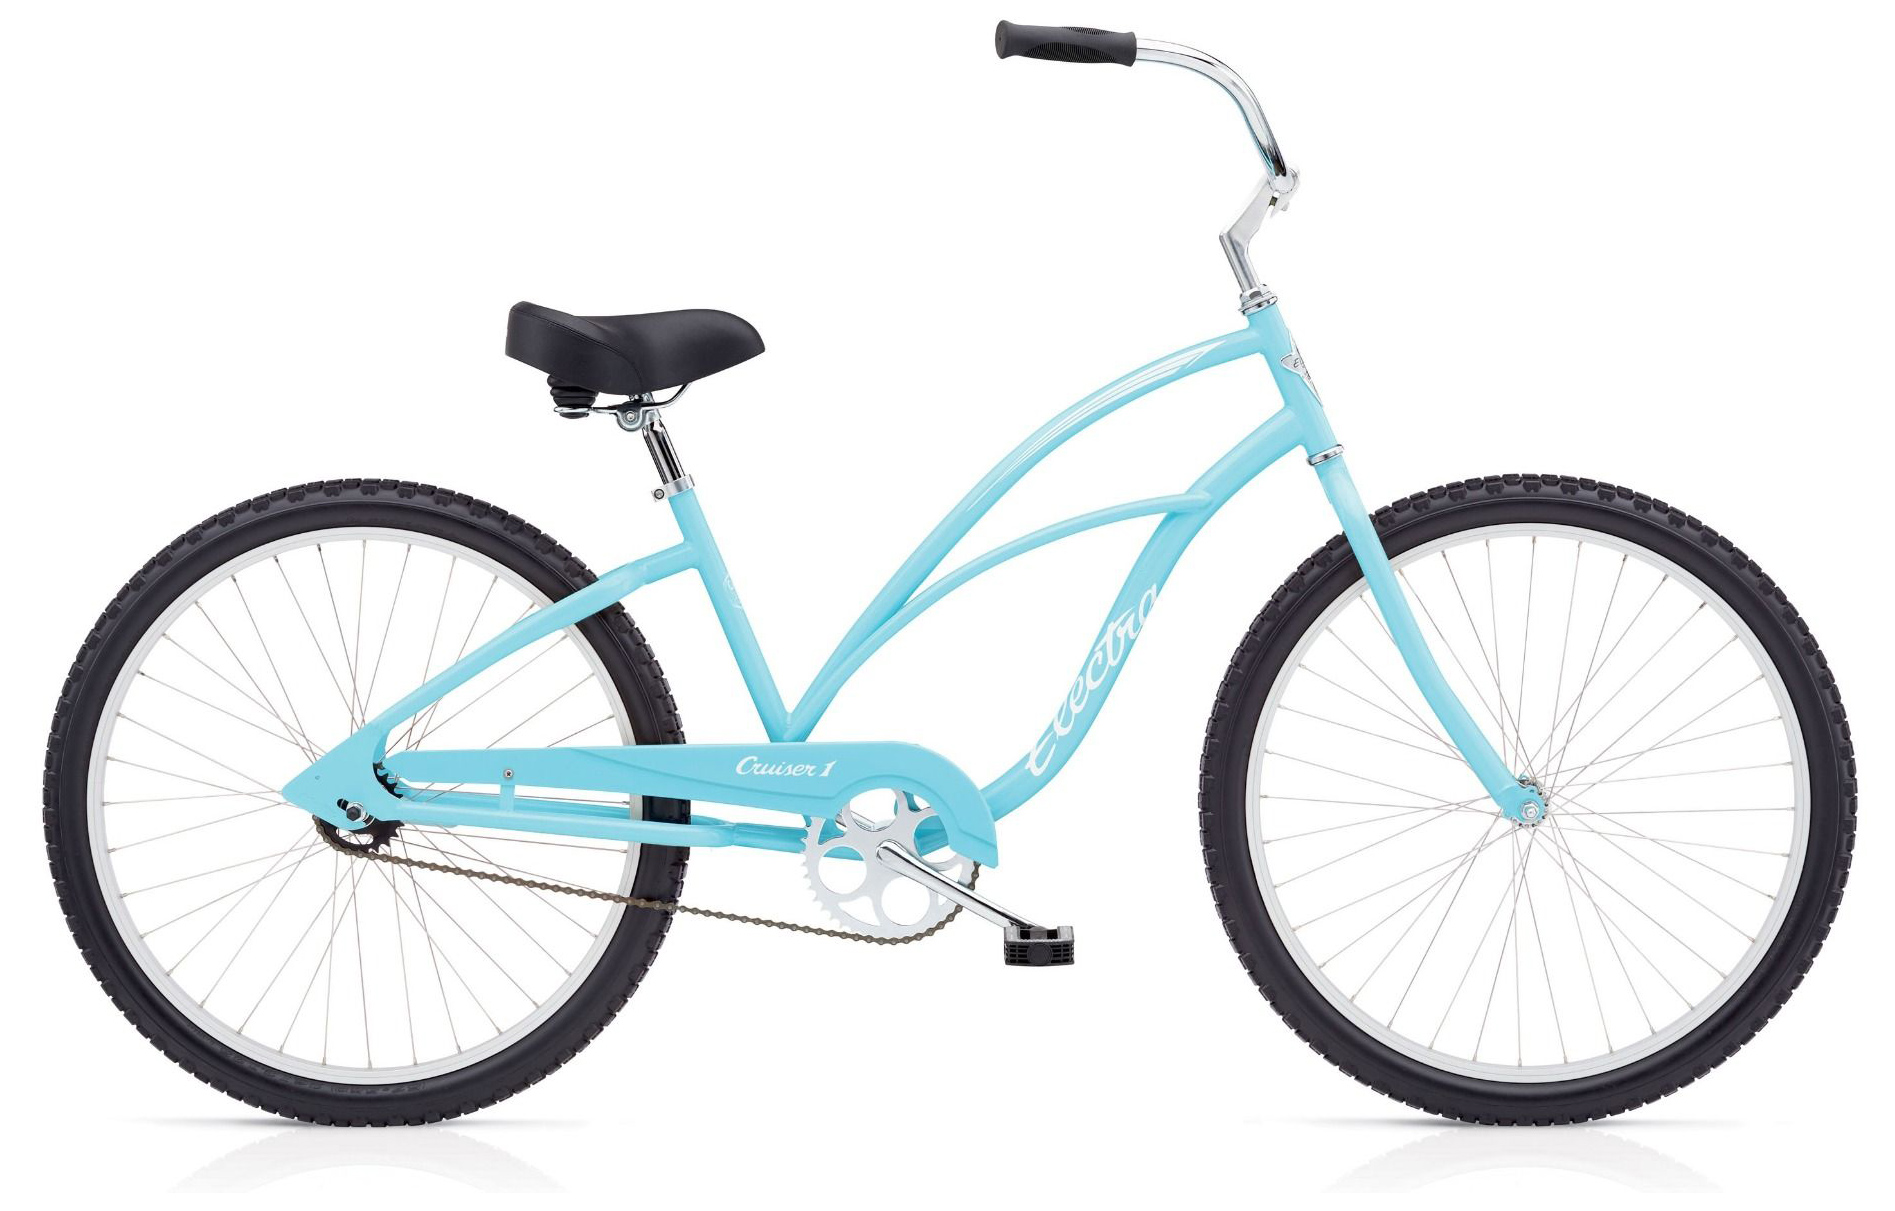  Отзывы о Подростковом велосипеде Electra Cruiser 1 '24 2019